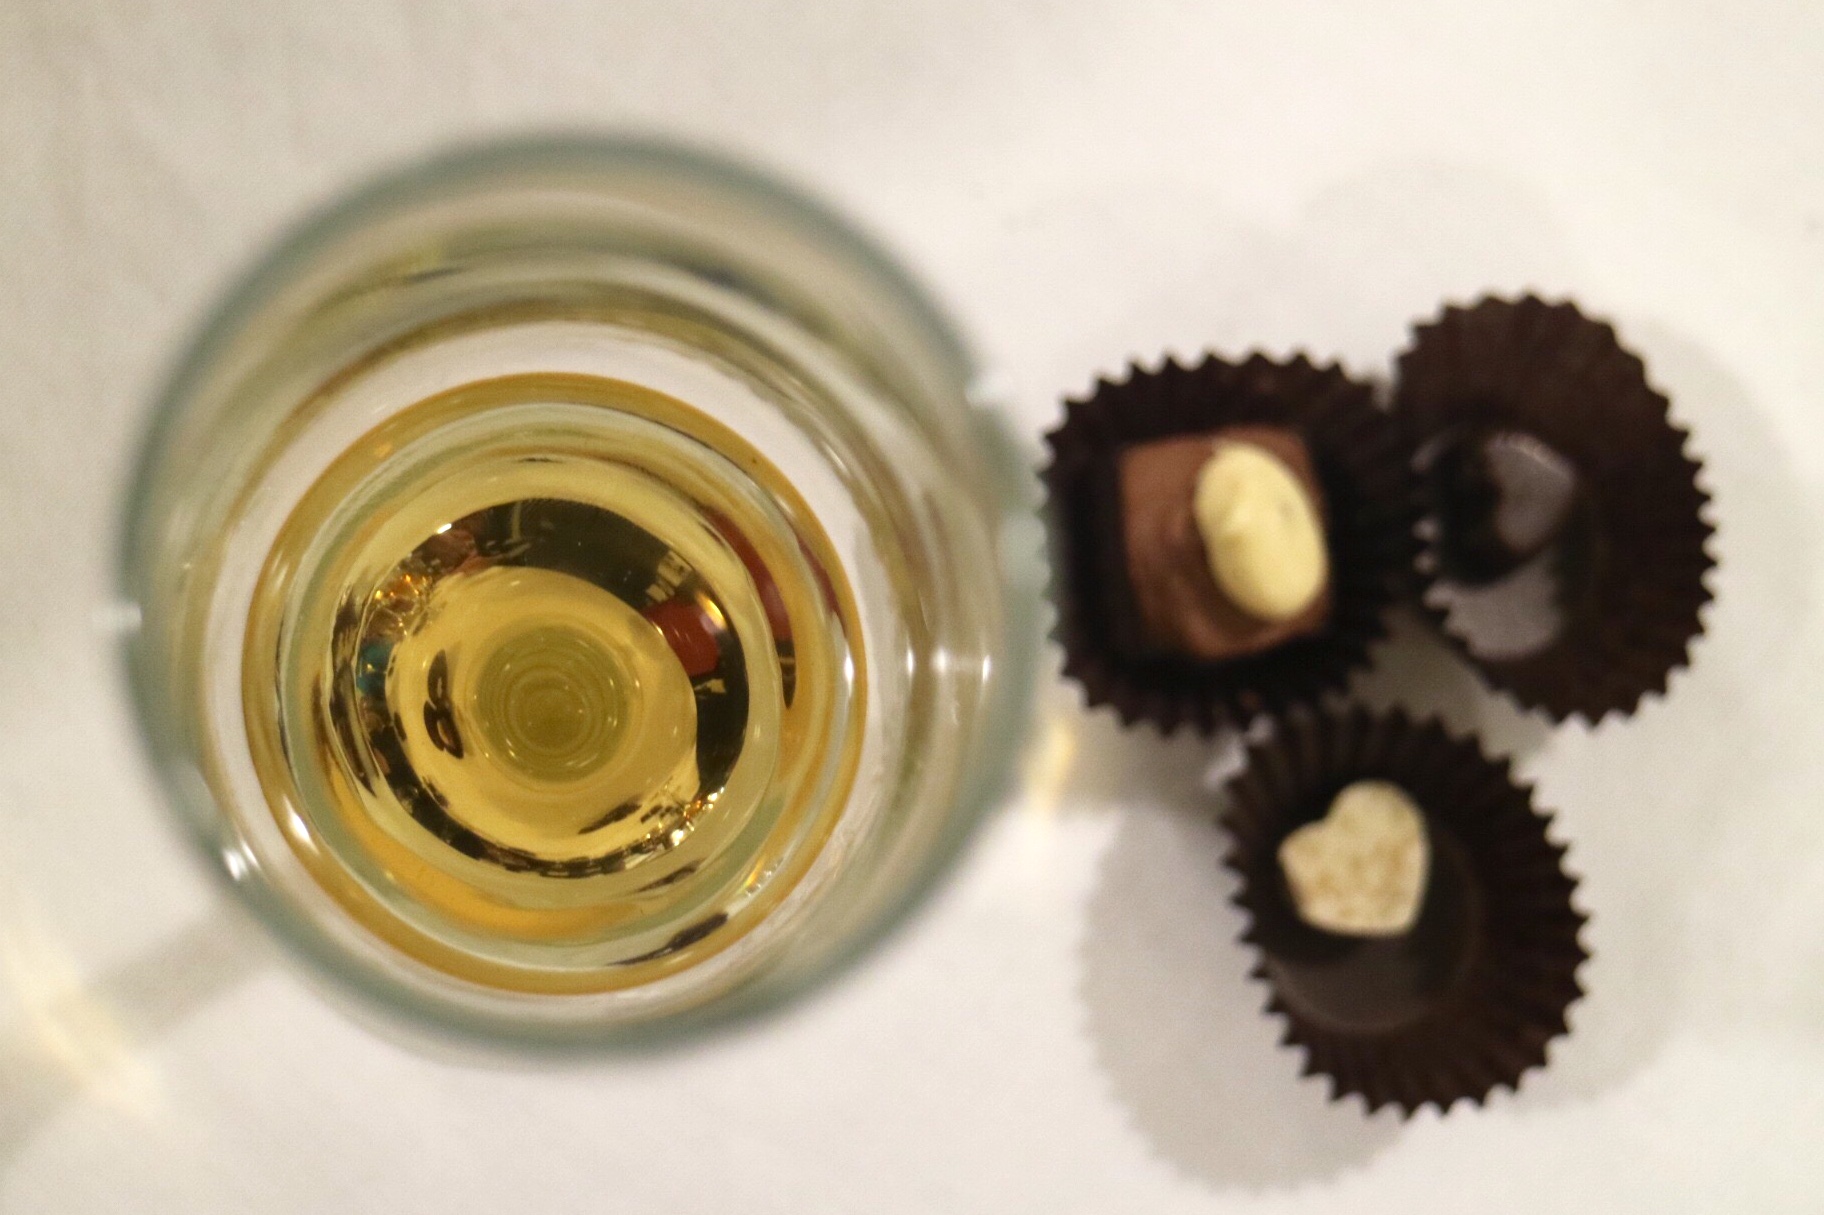 XOXOLAT Yaletown - Chocolate and Whiskey - photo by @pickydiner